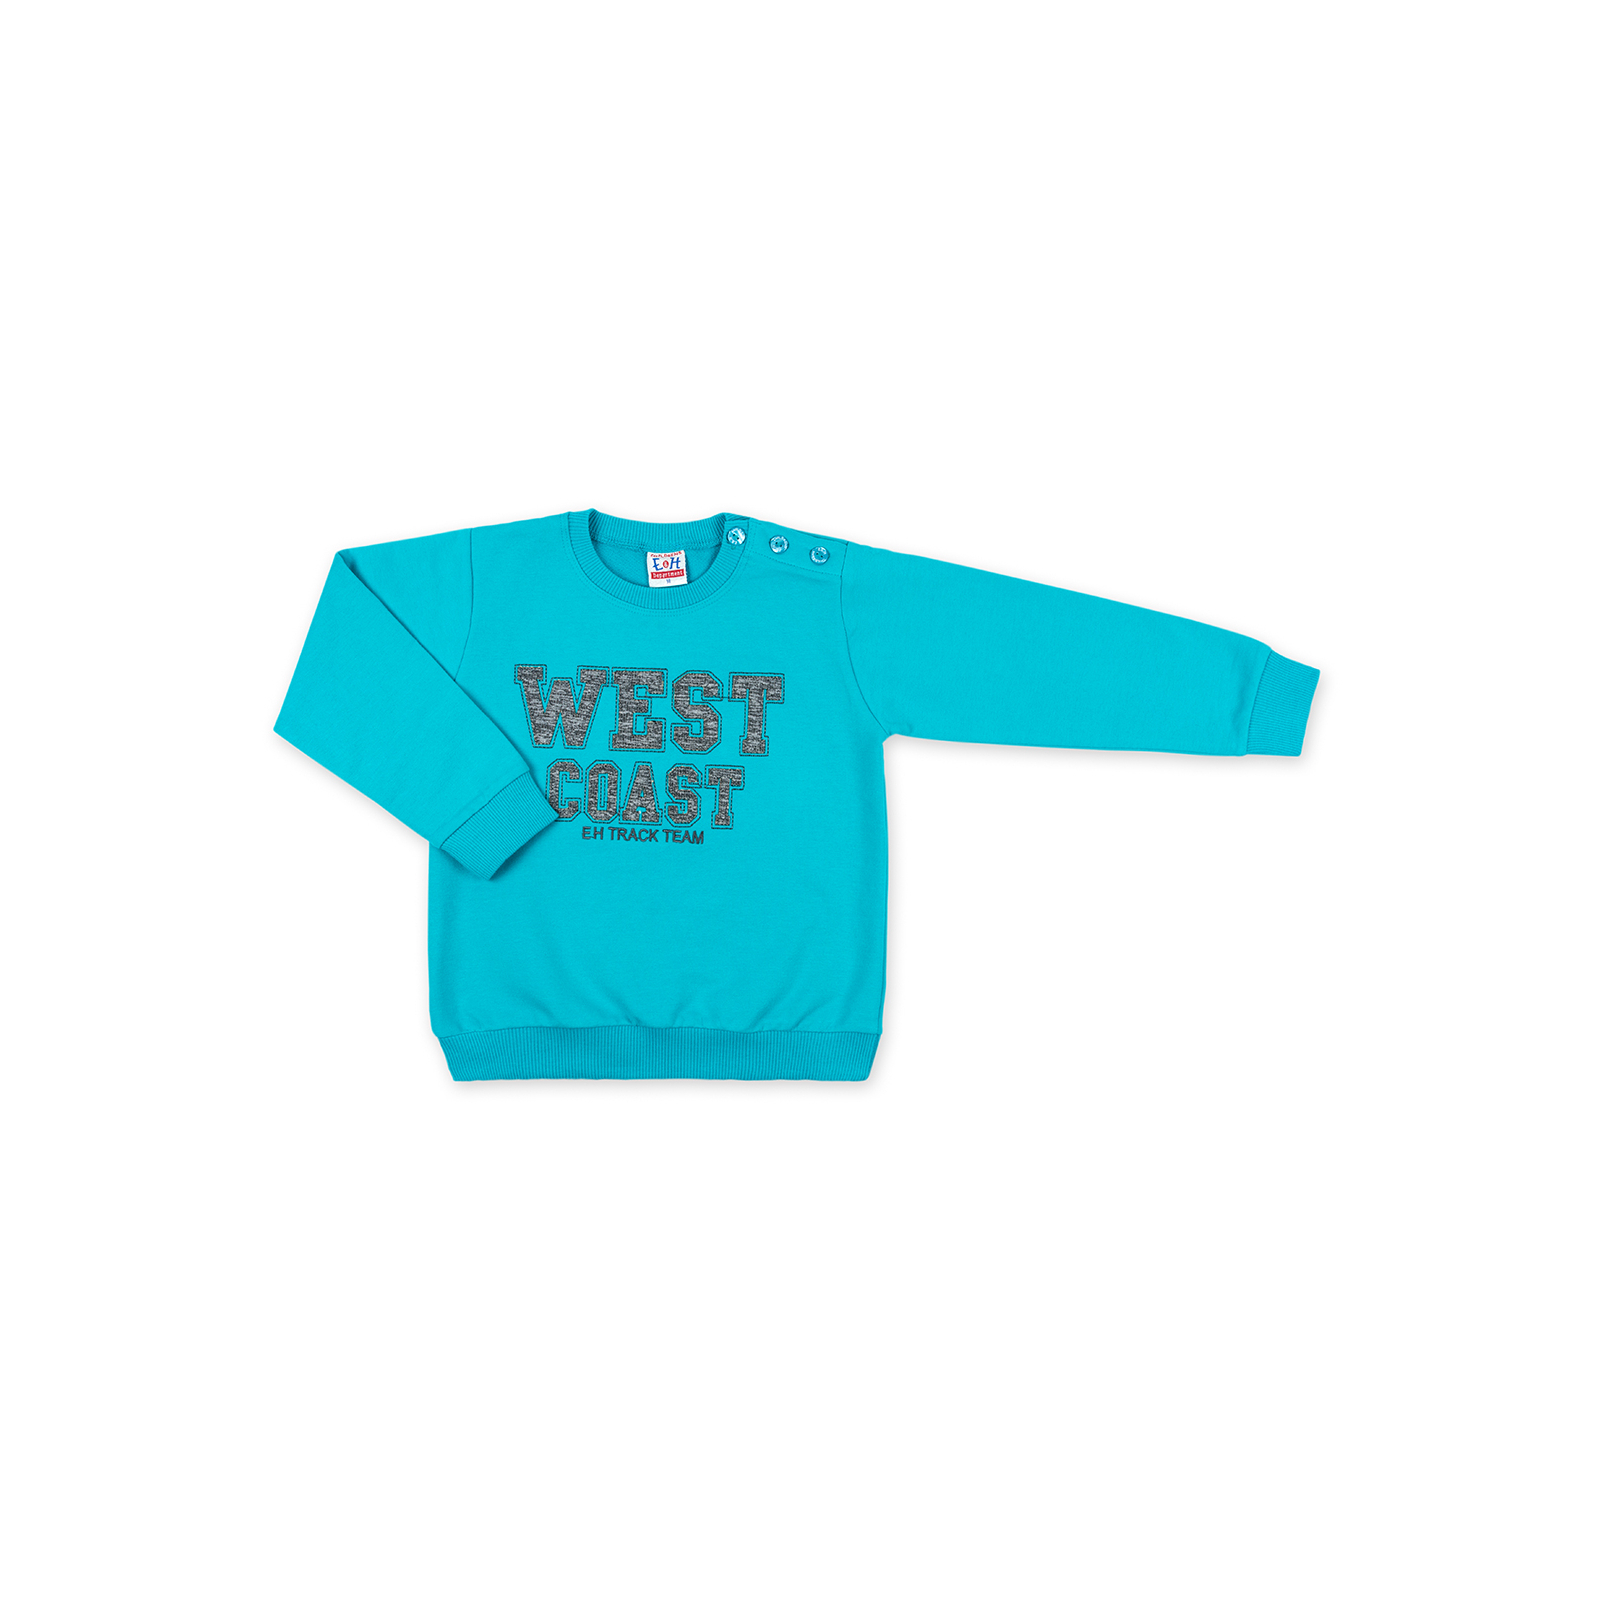 Набор детской одежды Breeze кофта с брюками "West coast" (8248-86B-red) изображение 2